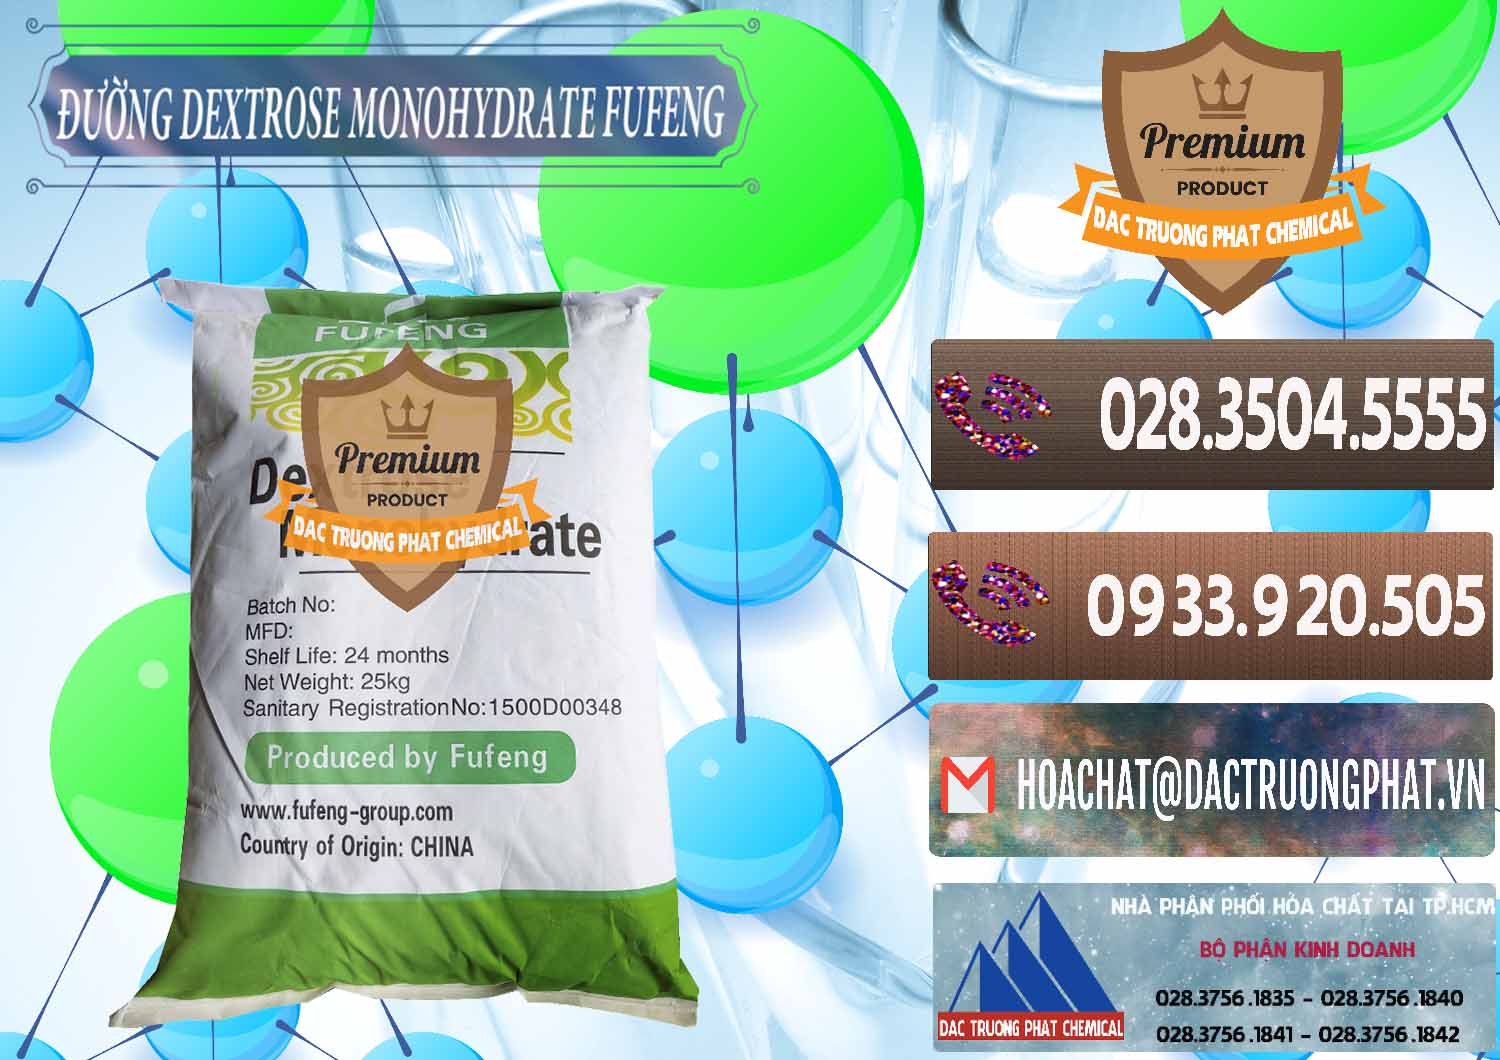 Cty cung cấp ( bán ) Đường Dextrose Monohydrate Food Grade Fufeng Trung Quốc China - 0223 - Công ty kinh doanh - cung cấp hóa chất tại TP.HCM - hoachatviet.net